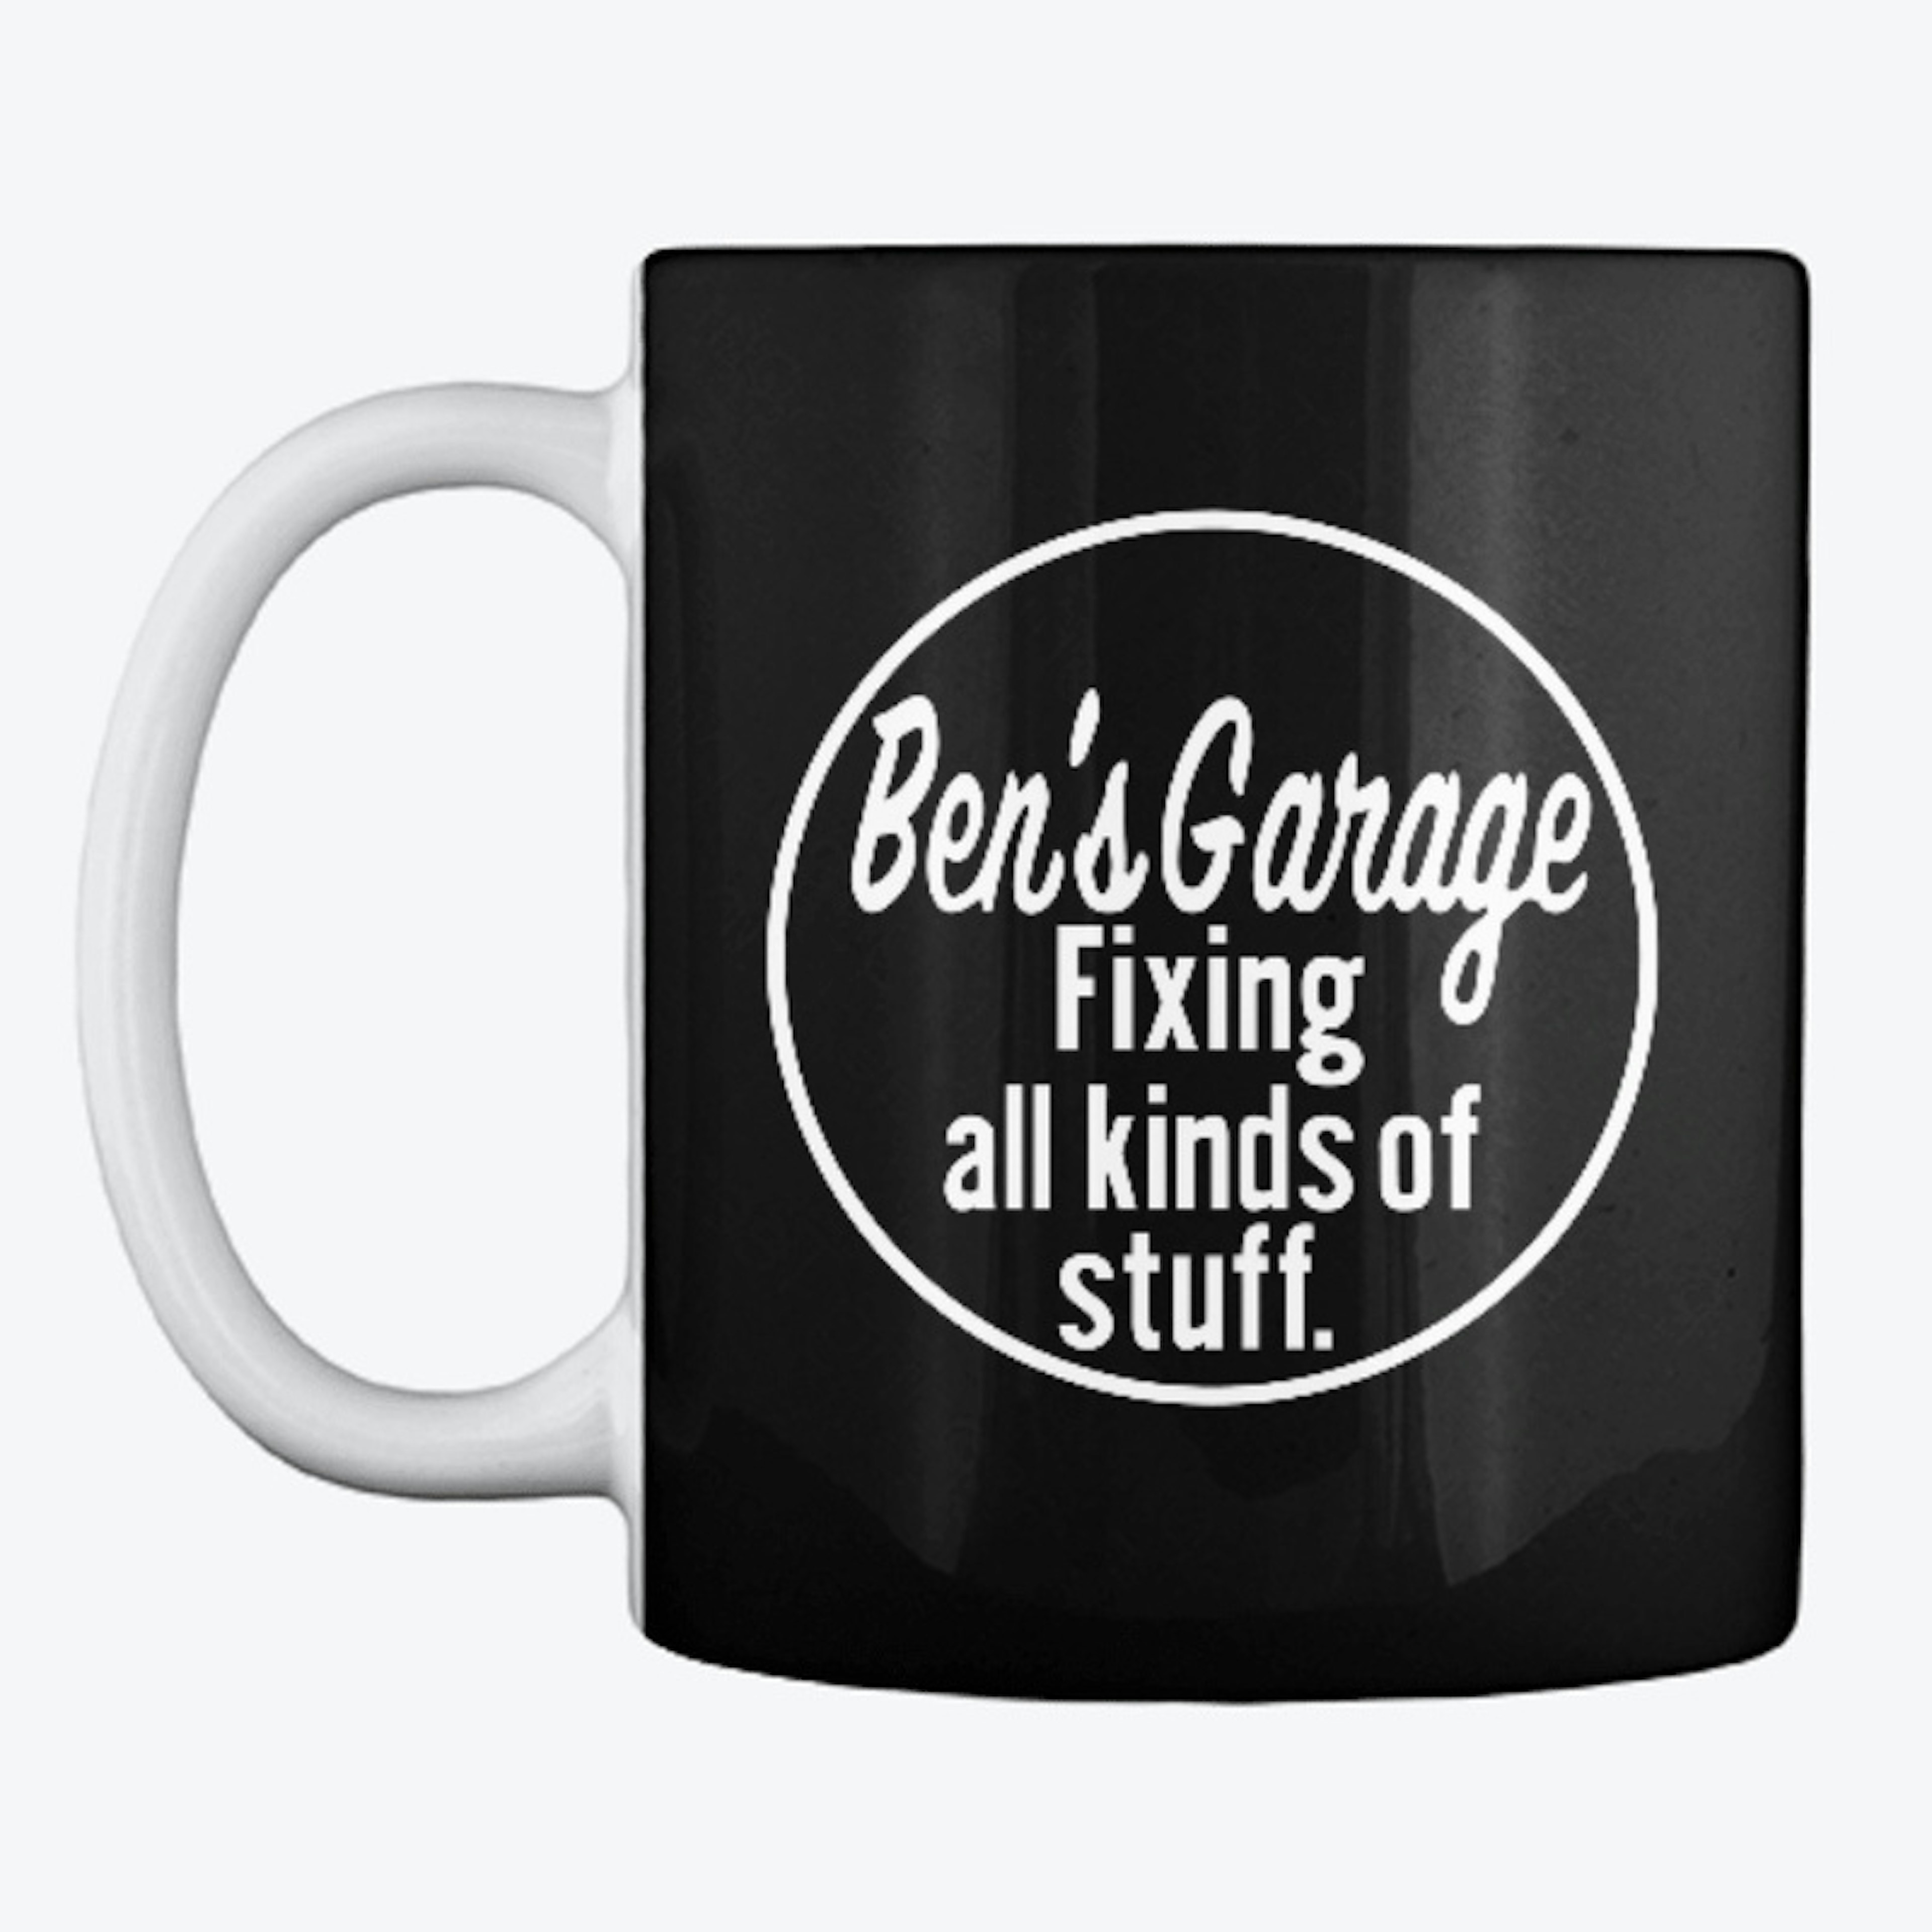 Ben's Garage mug.